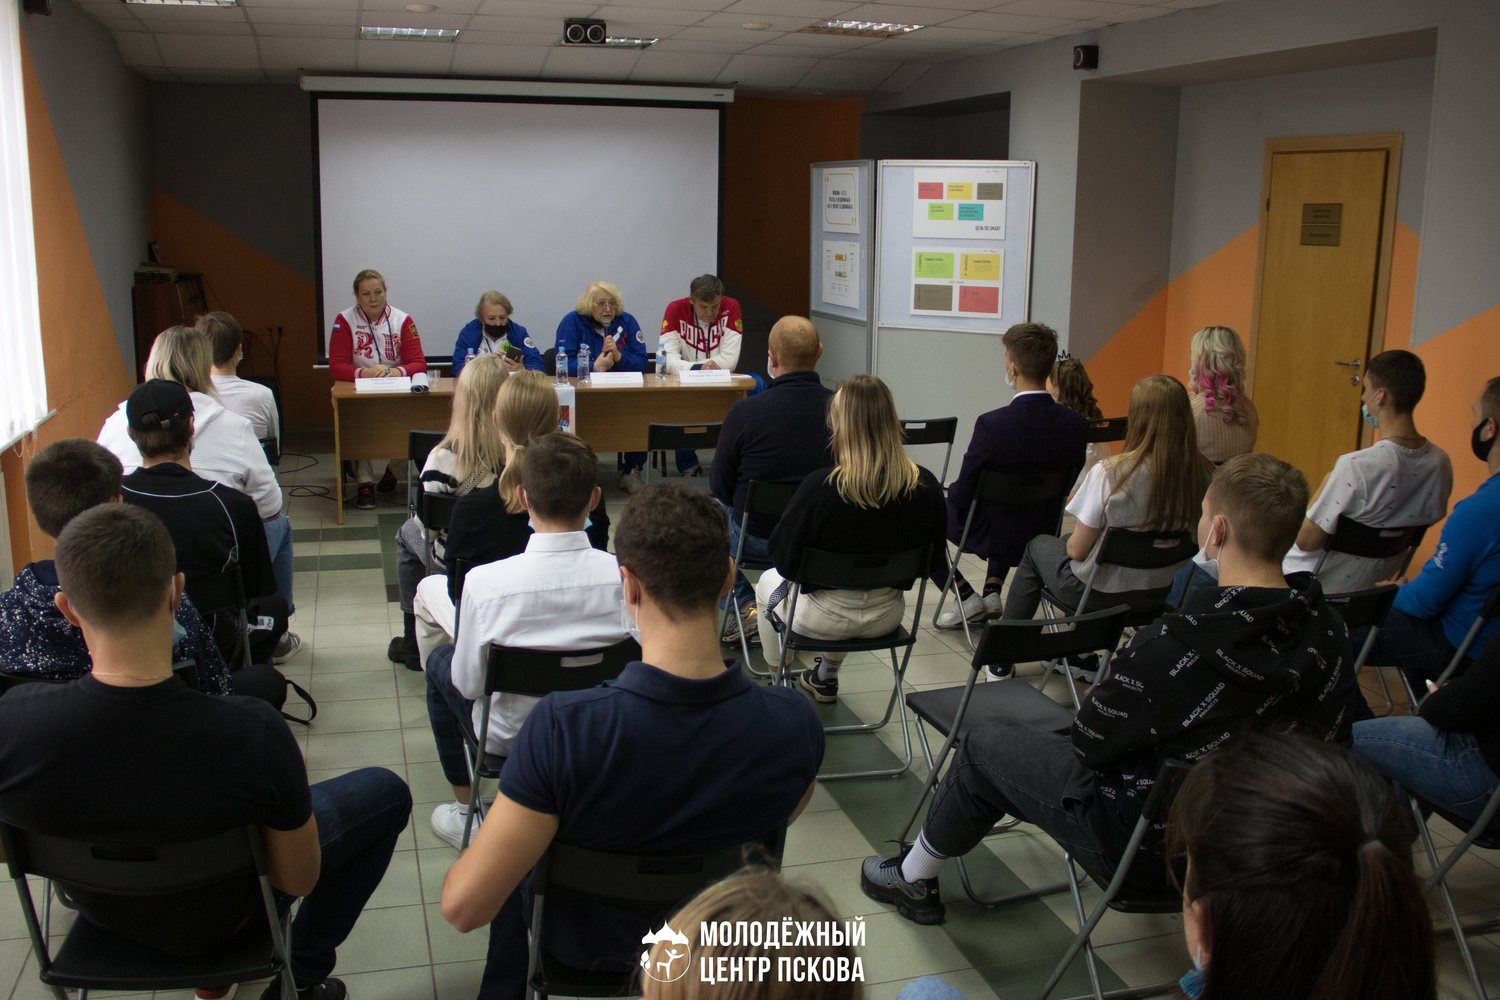 Вчера, 27 сентября, в Псковском городском молодёжном центре состоялась встреча юных спортсменов и их тренеров с официальной делегацией Российского союза спортсменов